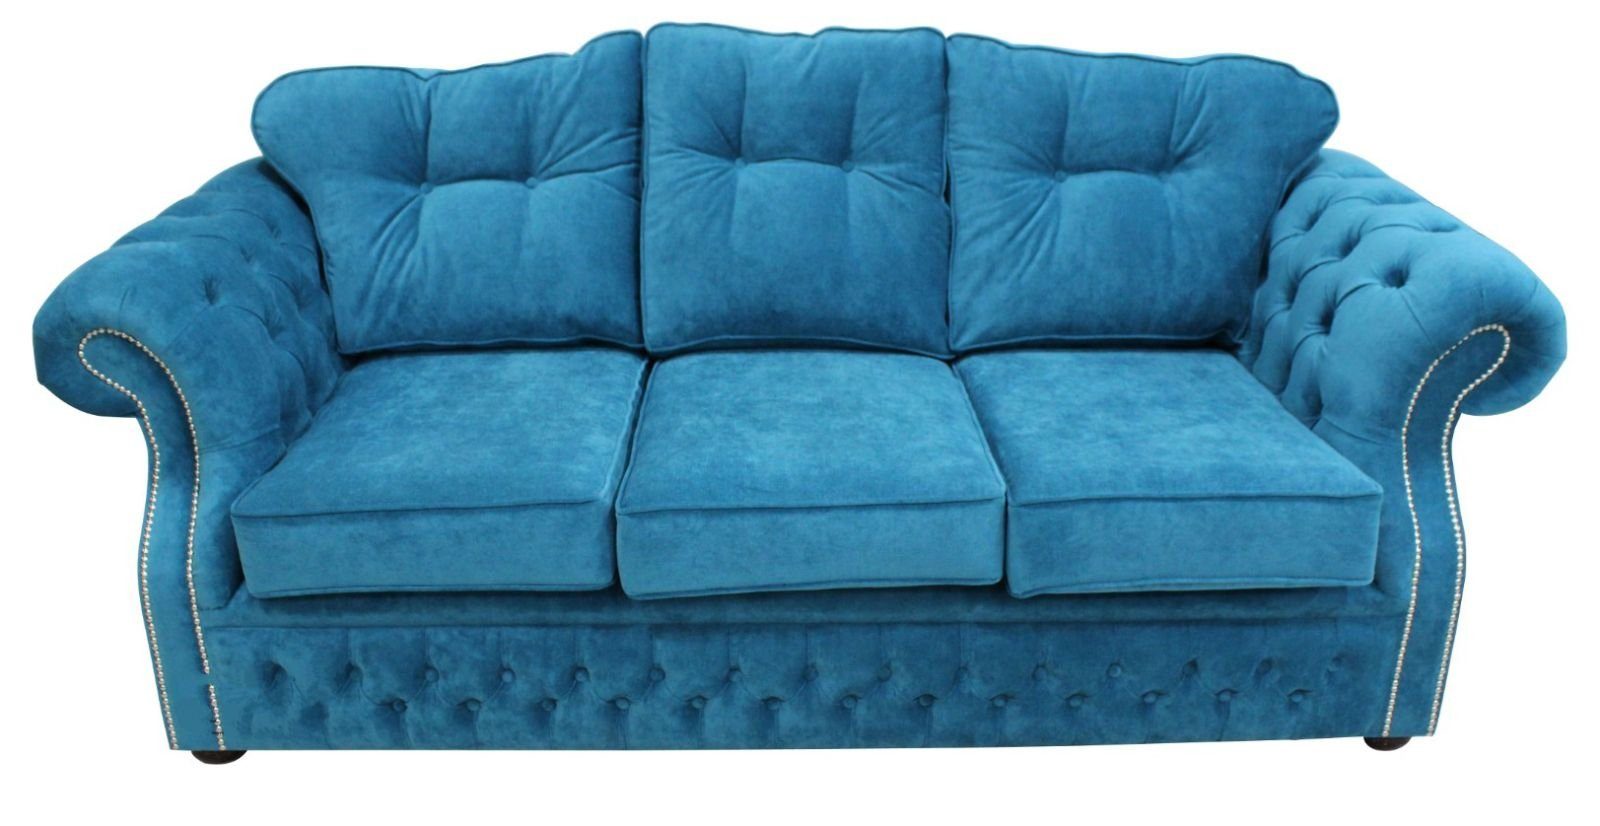 JVmoebel Sofa Blauer Europe Wohnzimmermöbel Made Chesterfield Sofa luxus Design, in Polster